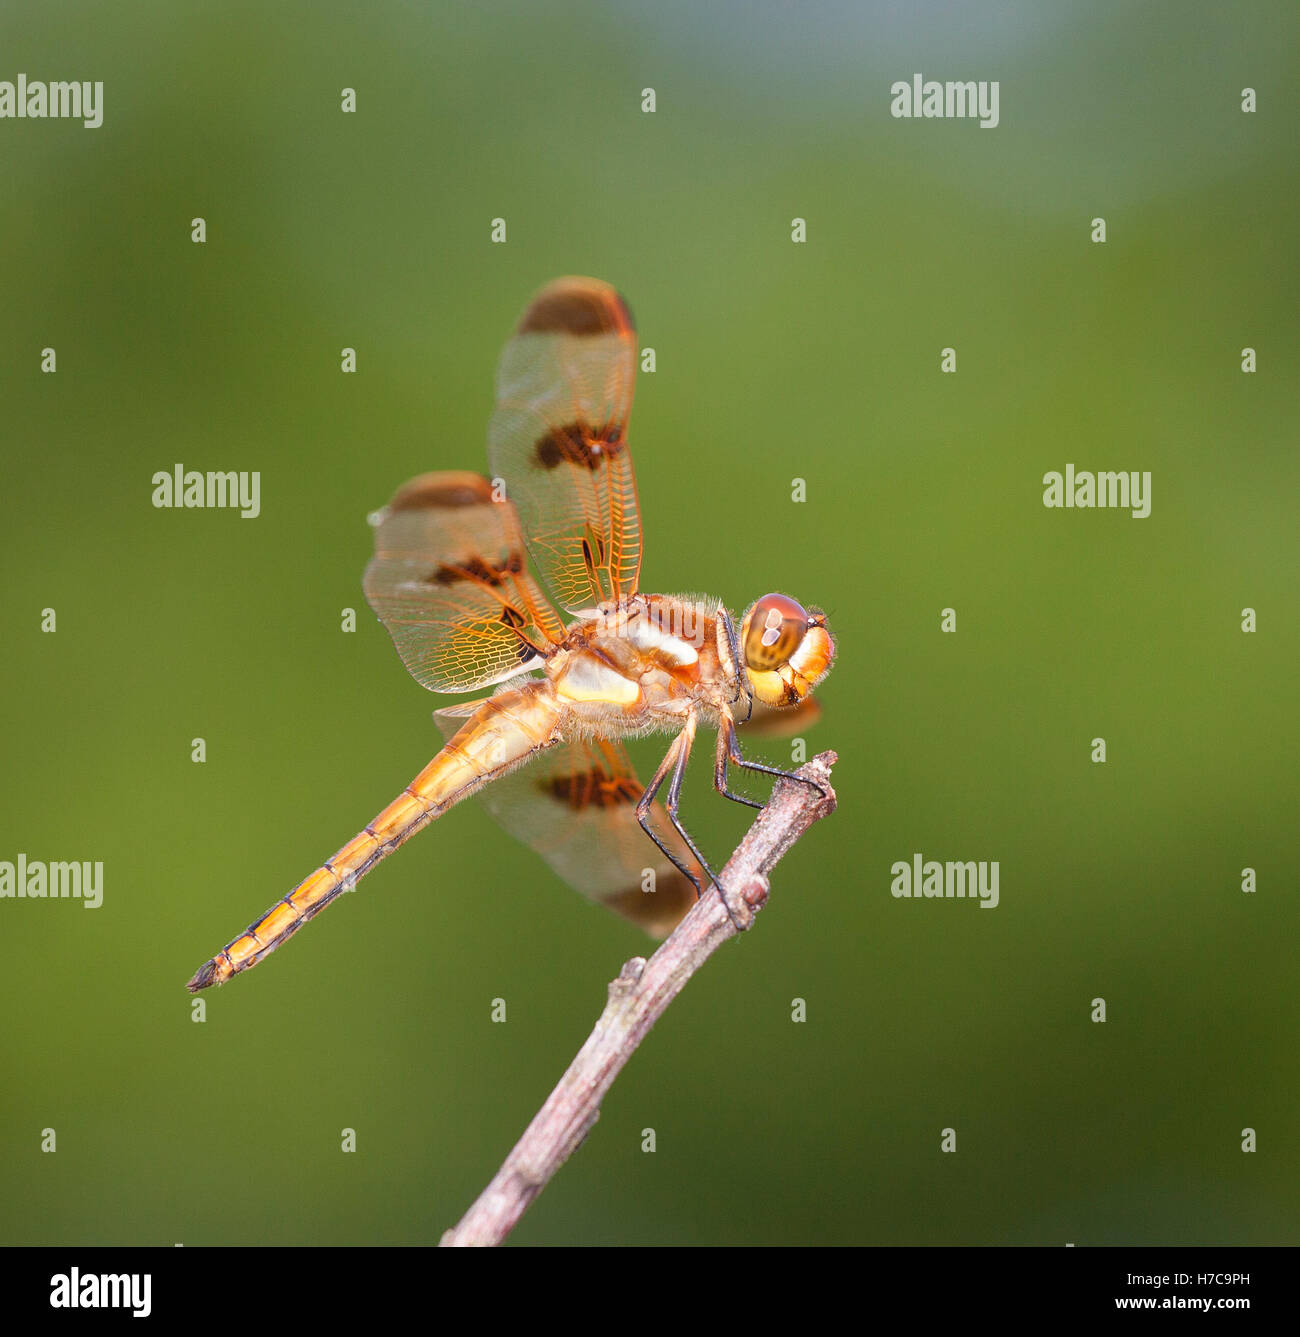 Colorazione arancione immagini e fotografie stock ad alta risoluzione -  Alamy